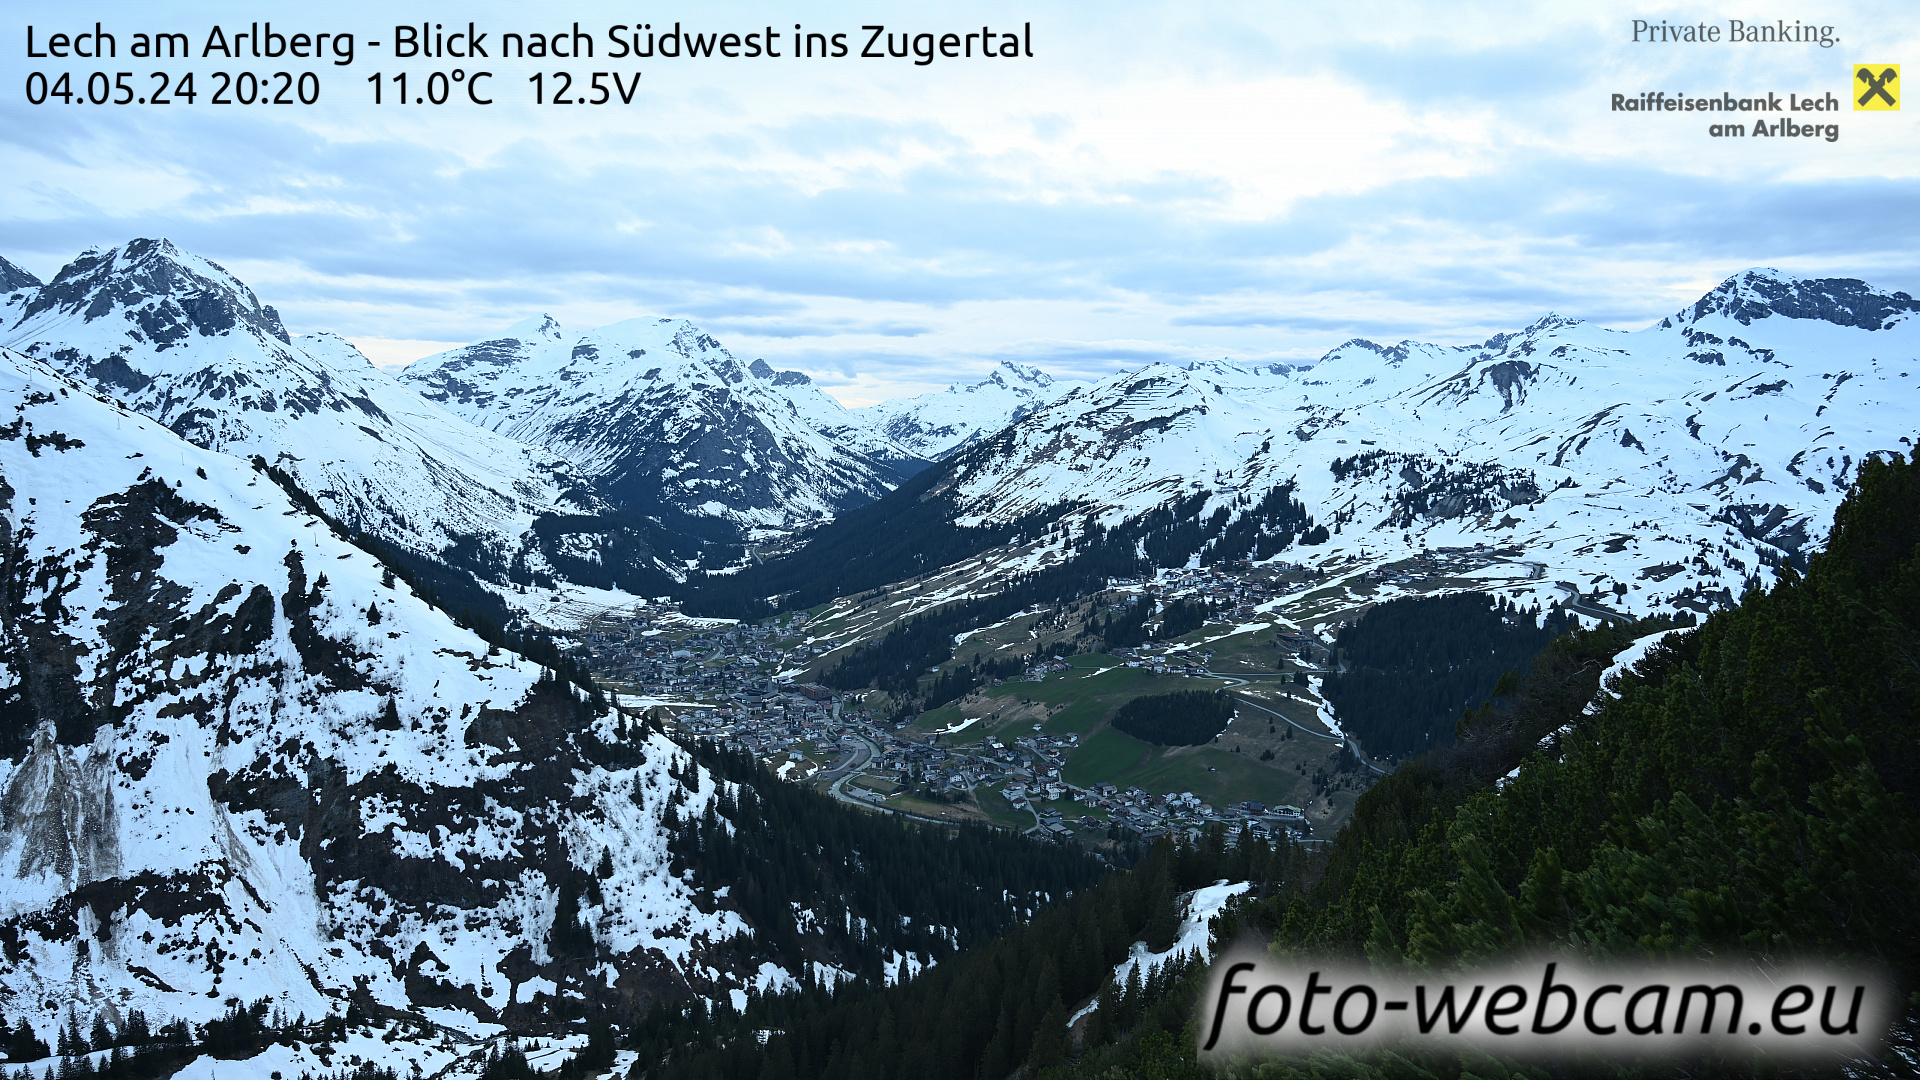 Lech am Arlberg Tue. 20:31